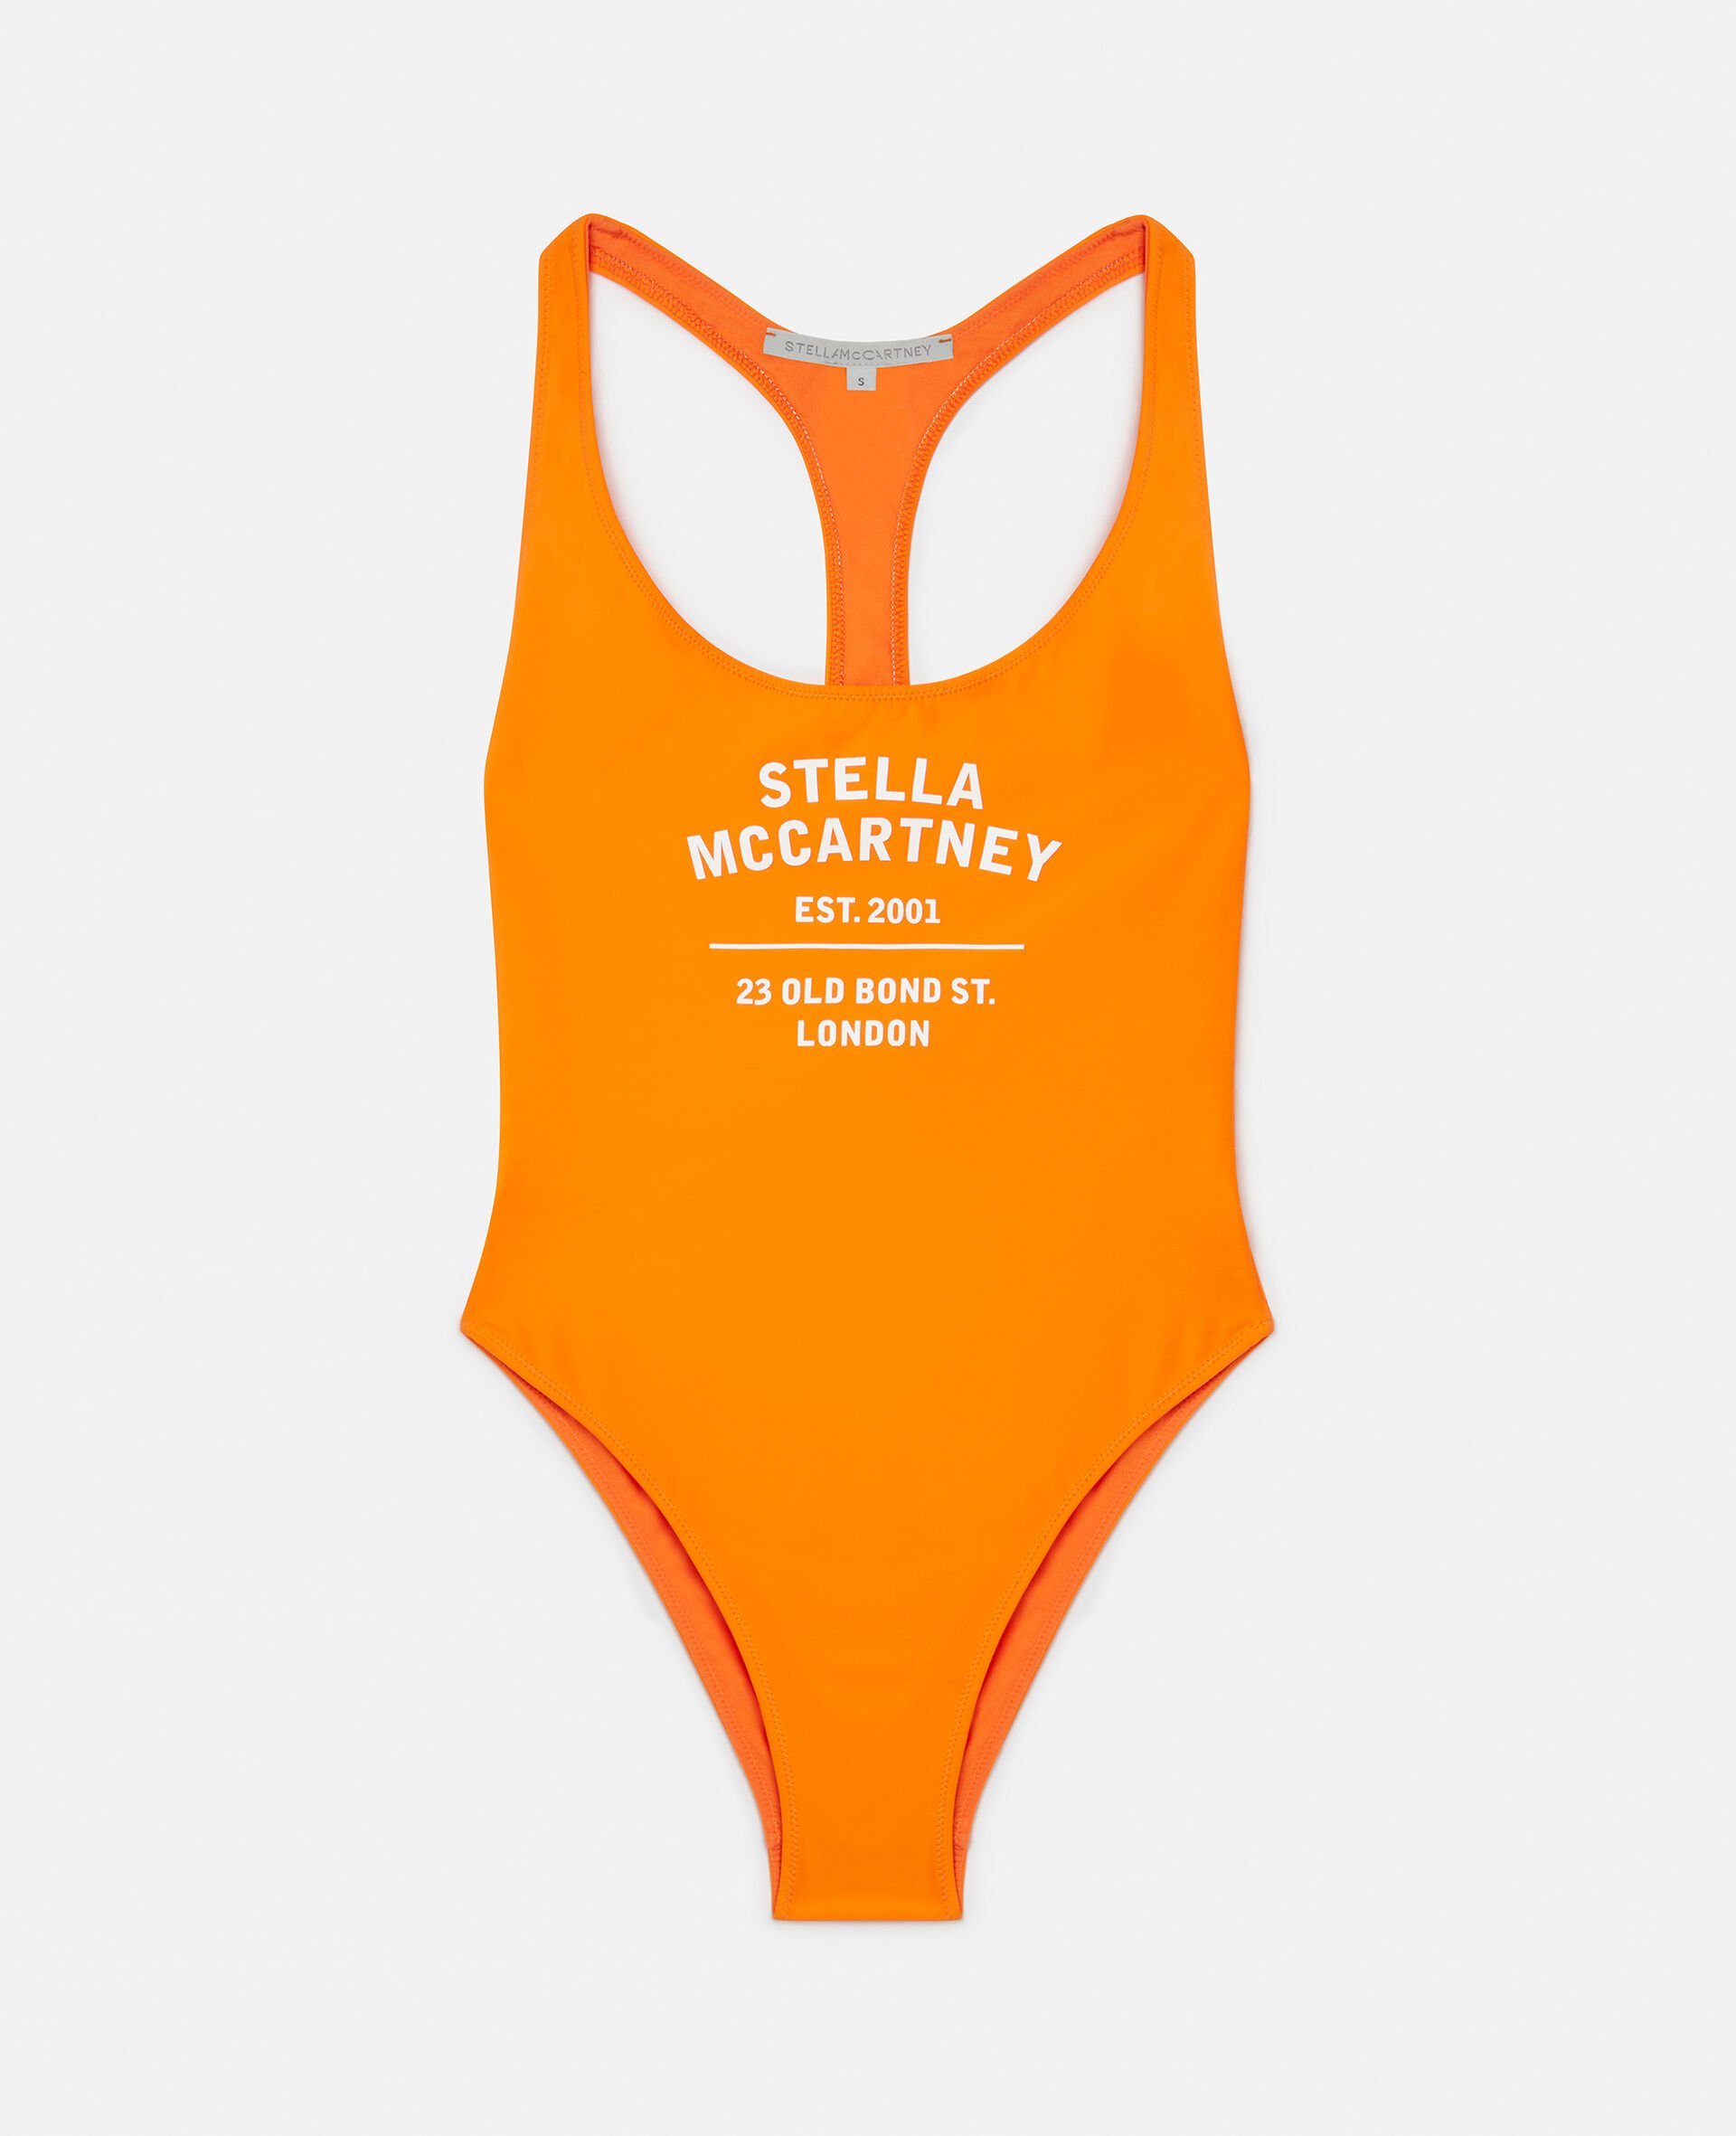 Old Bond Steet 3D Logo Swimsuit-Orange-large image number 0